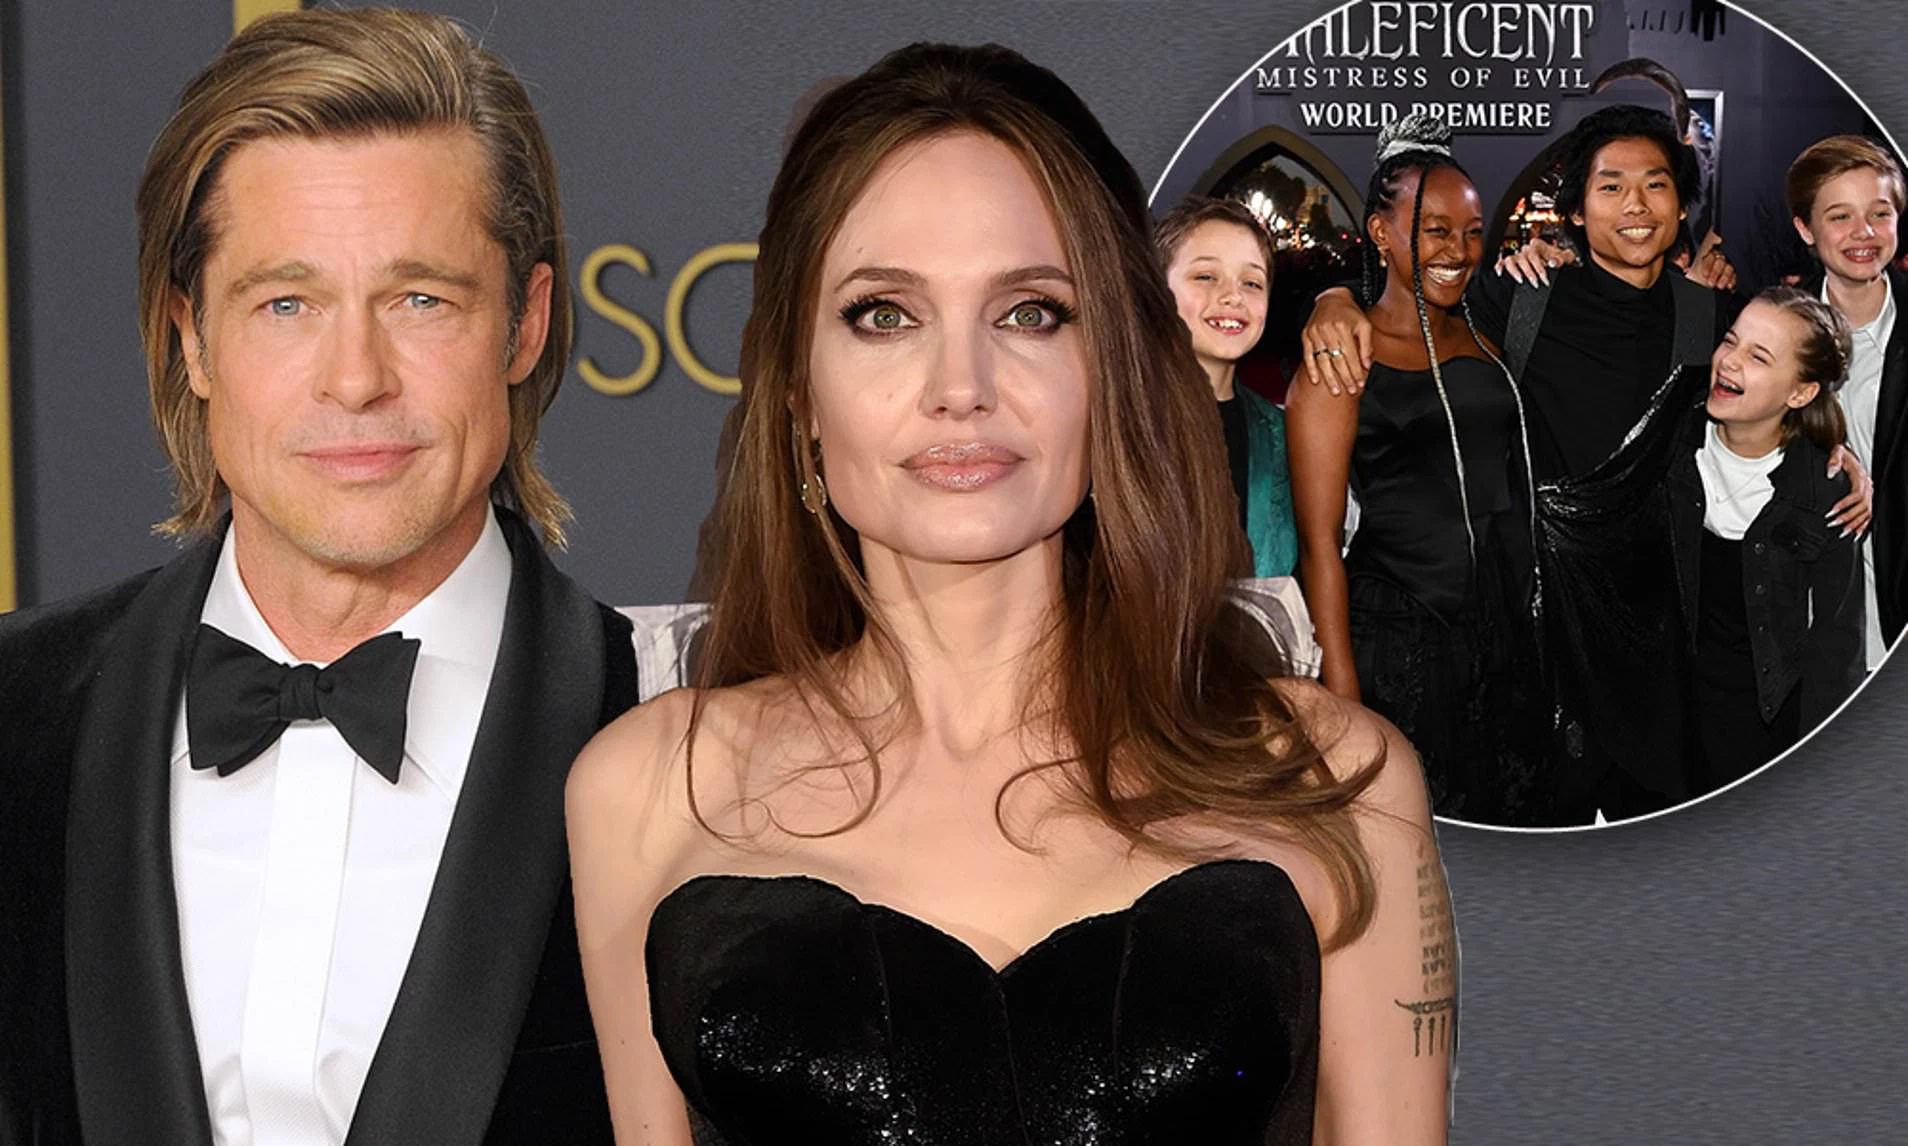 Hậu khoảnh khắc “selfie” nổi tiếng nhất lịch sử Oscar, cặp đôi Brad Pitt - Angelina Jolie và những nhân vật trong hình giờ ra sao? - Ảnh 9.